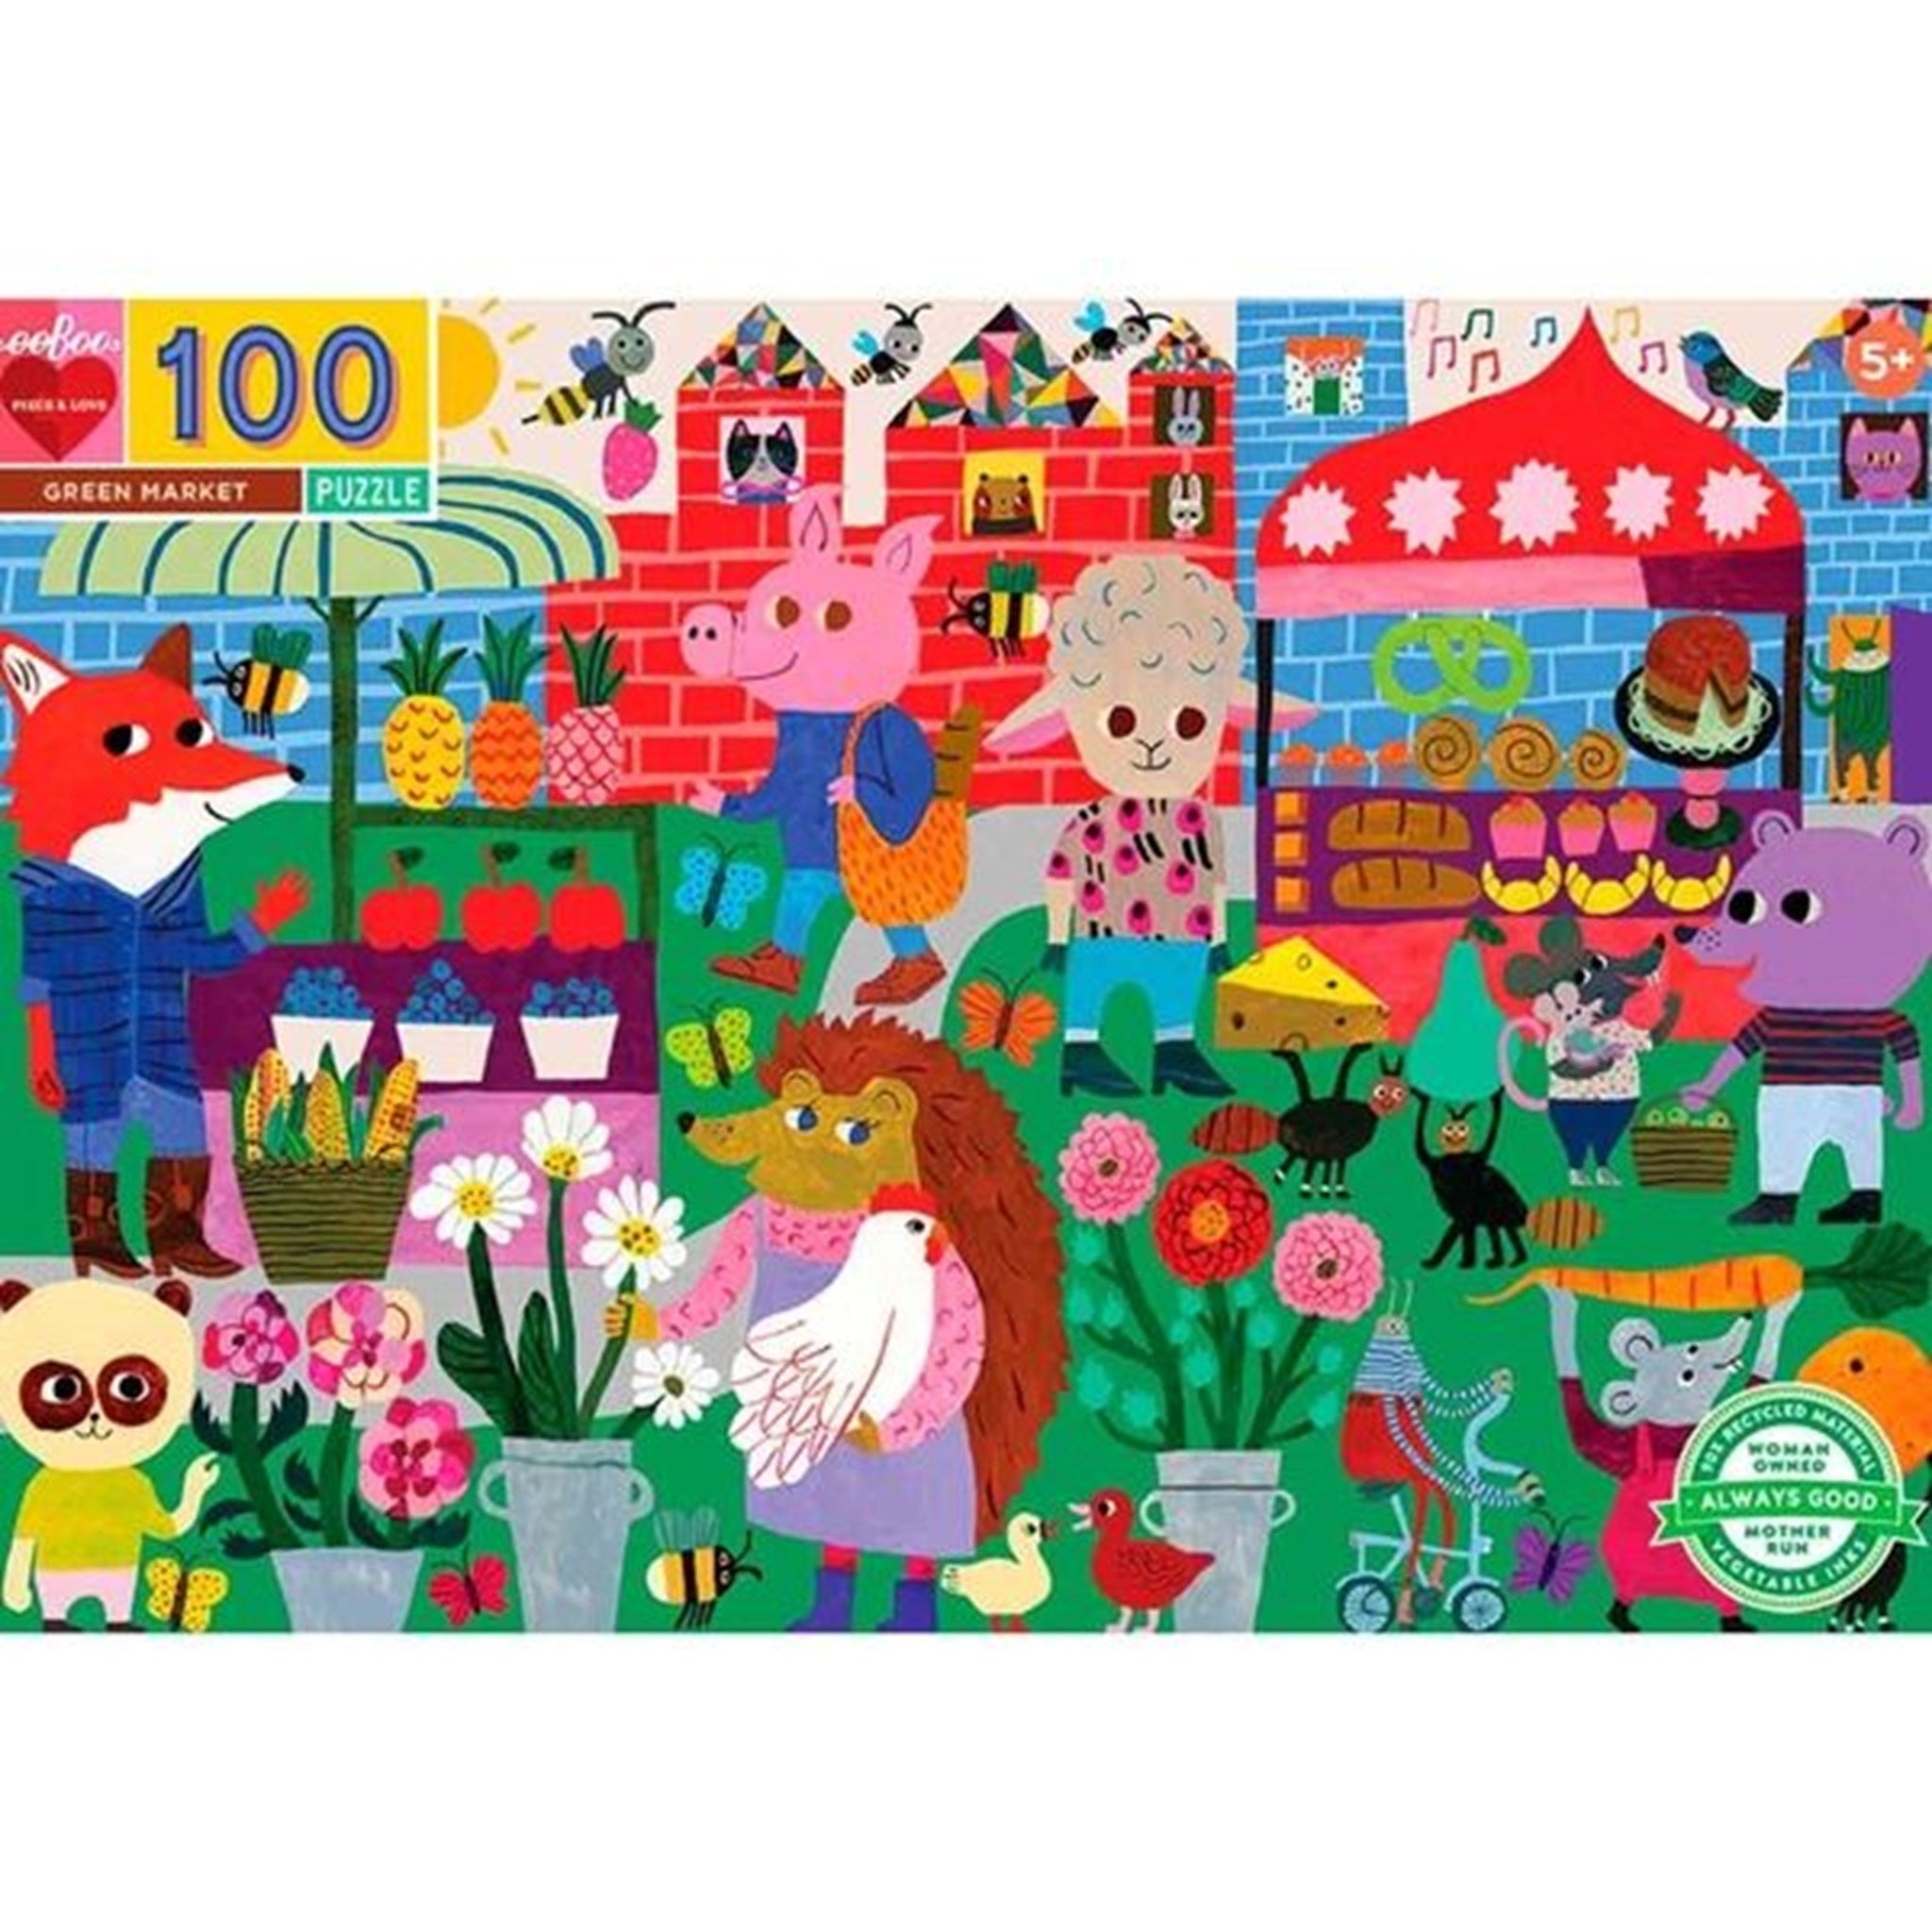 Eeboo Puzzle 100 Pieces - Green Market